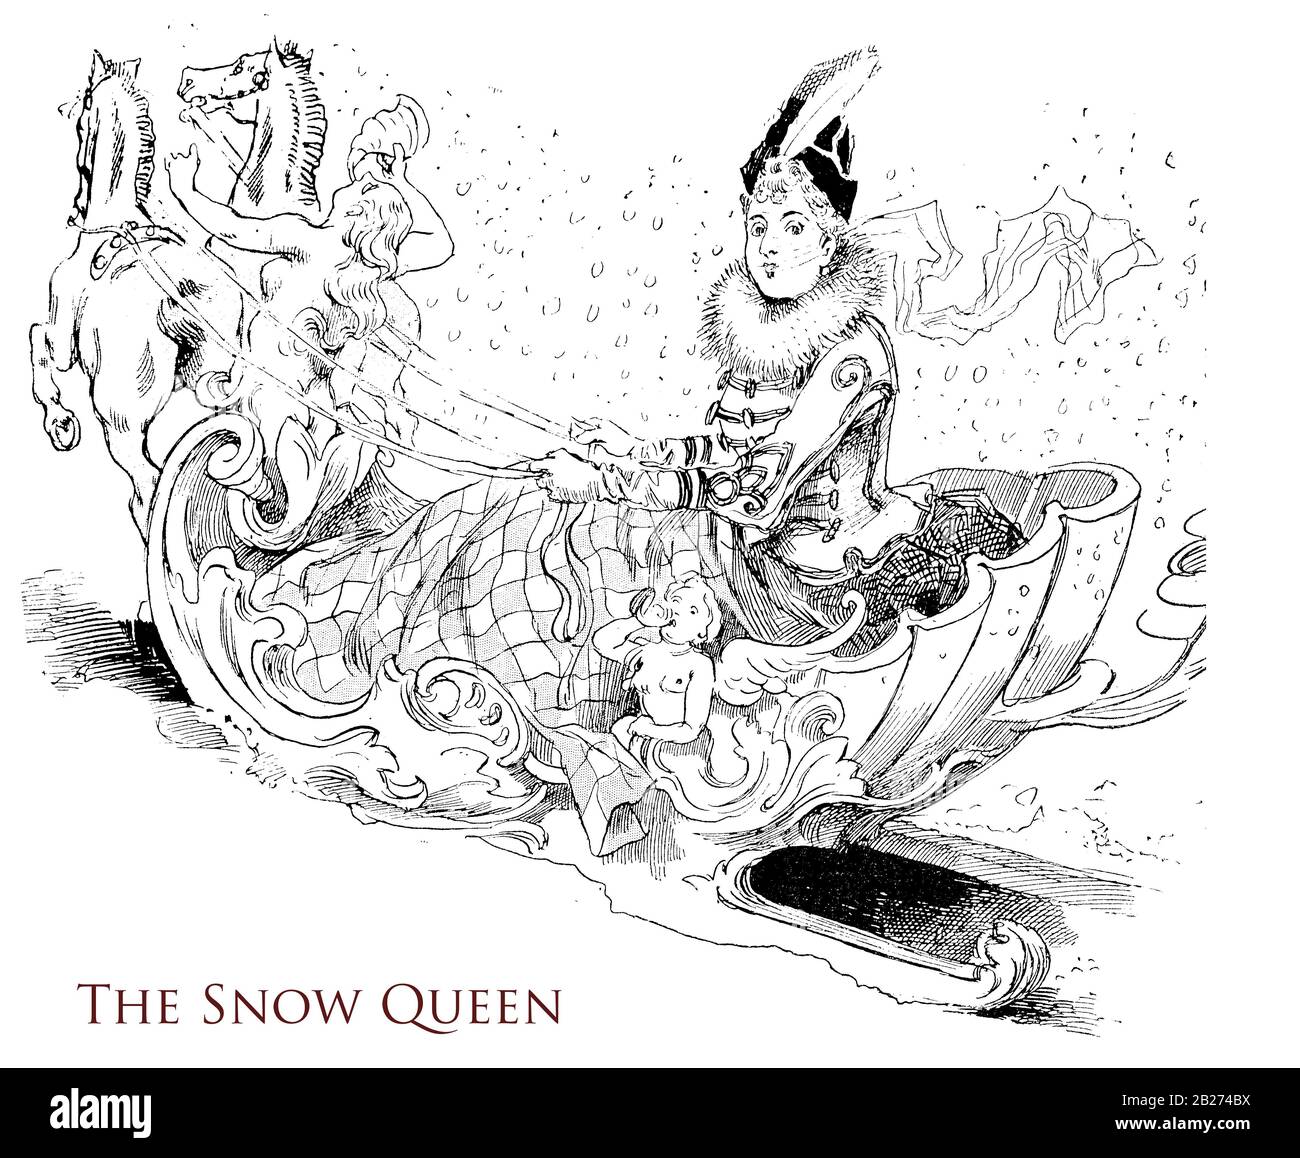 Französischer Humor und Karikatur: Die Schneekönigin, modische Dame fährt eine von Pferden gezogene, hyperverzierte Schleuder mit einem schicken Kostüm unter einem Schneefall Stockfoto